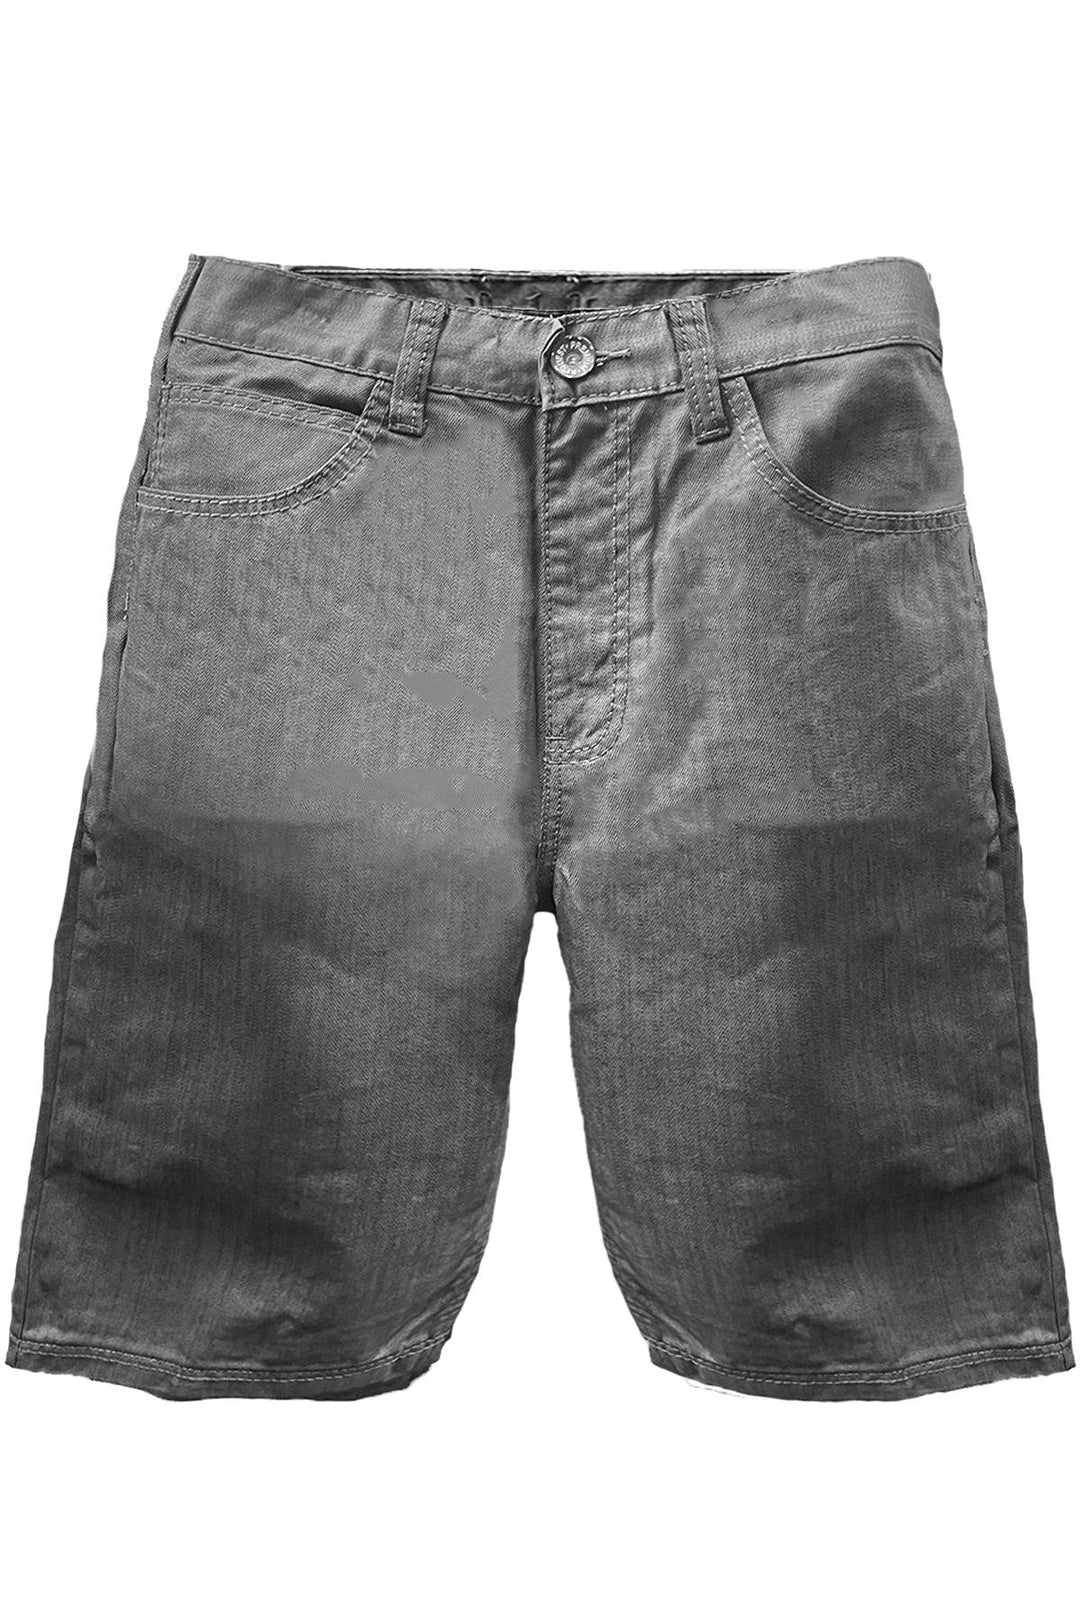 Premium Grey 5 Pocket Shorts - Brand My Case